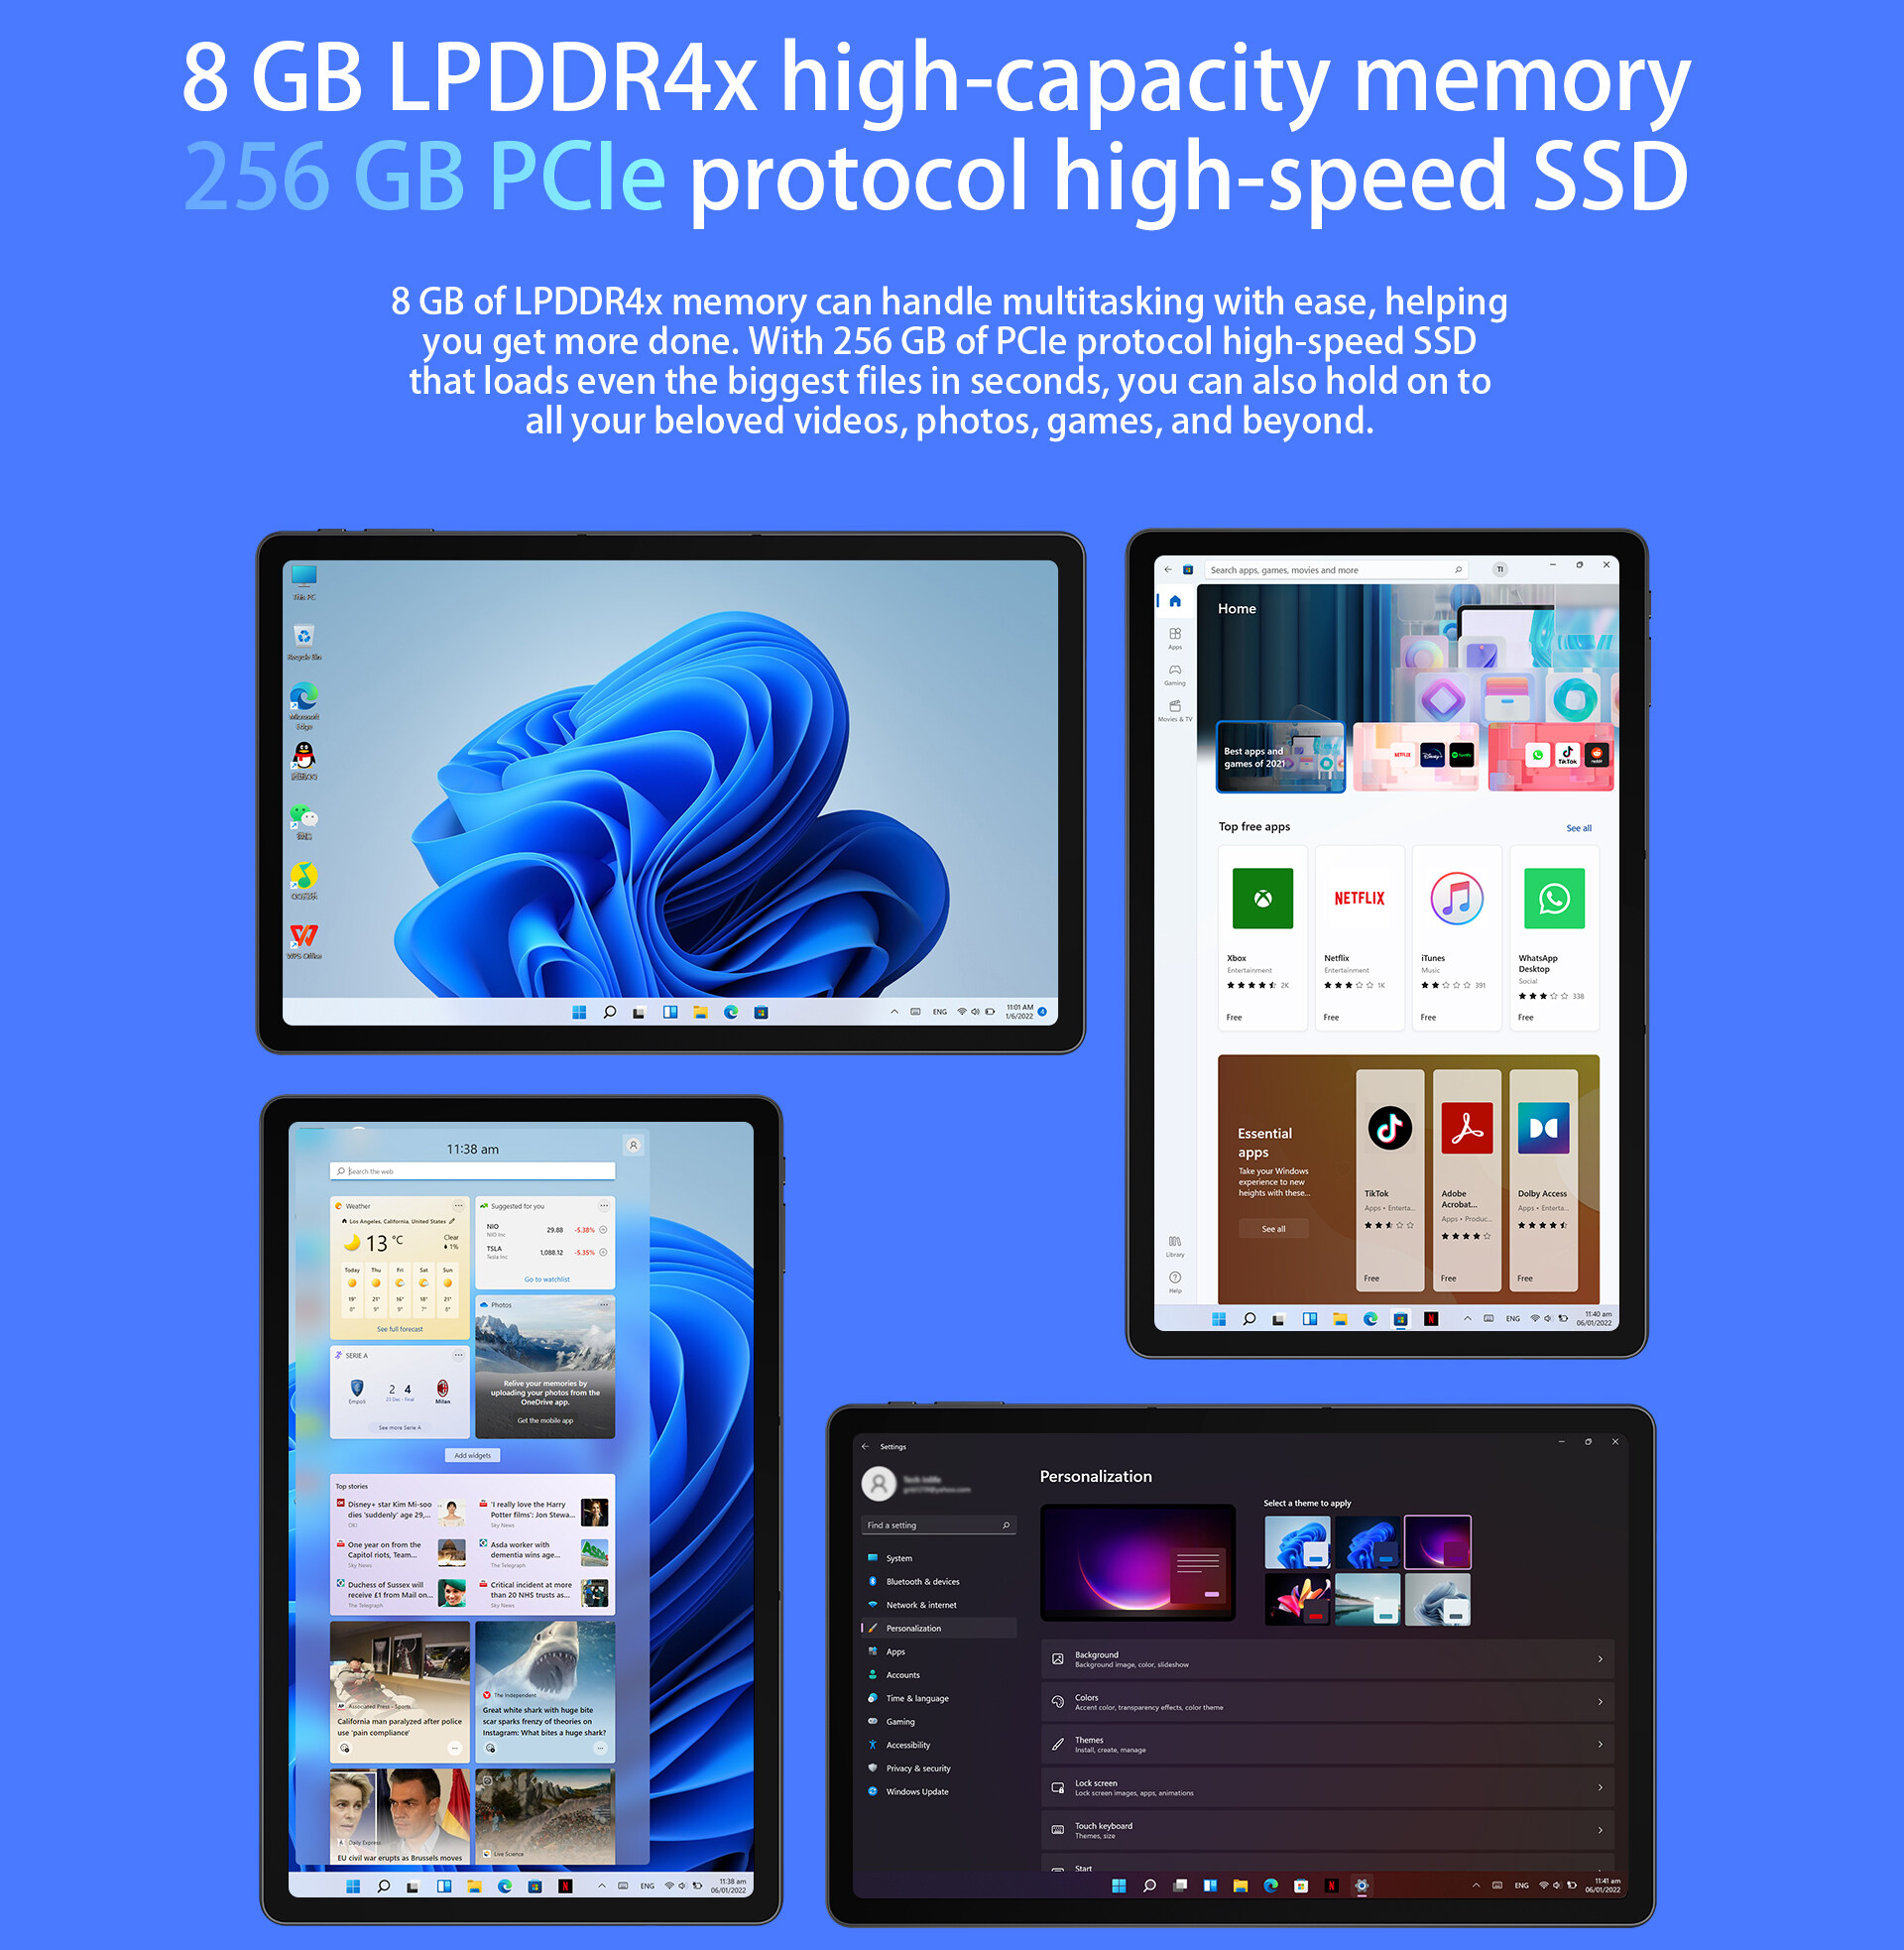 คำอธิบายเพิ่มเติมเกี่ยวกับ 【NEW】Alldocube IWork GT 2-in-1 PCแท็บเล็ต11นิ้ว 2K หน้าจอ Intel 2022 Win 11 8GB + I5-1135G7 GB SSD WiFi 6 2-In-1 Windows แท็บเล็ตสำหรับทำงาน